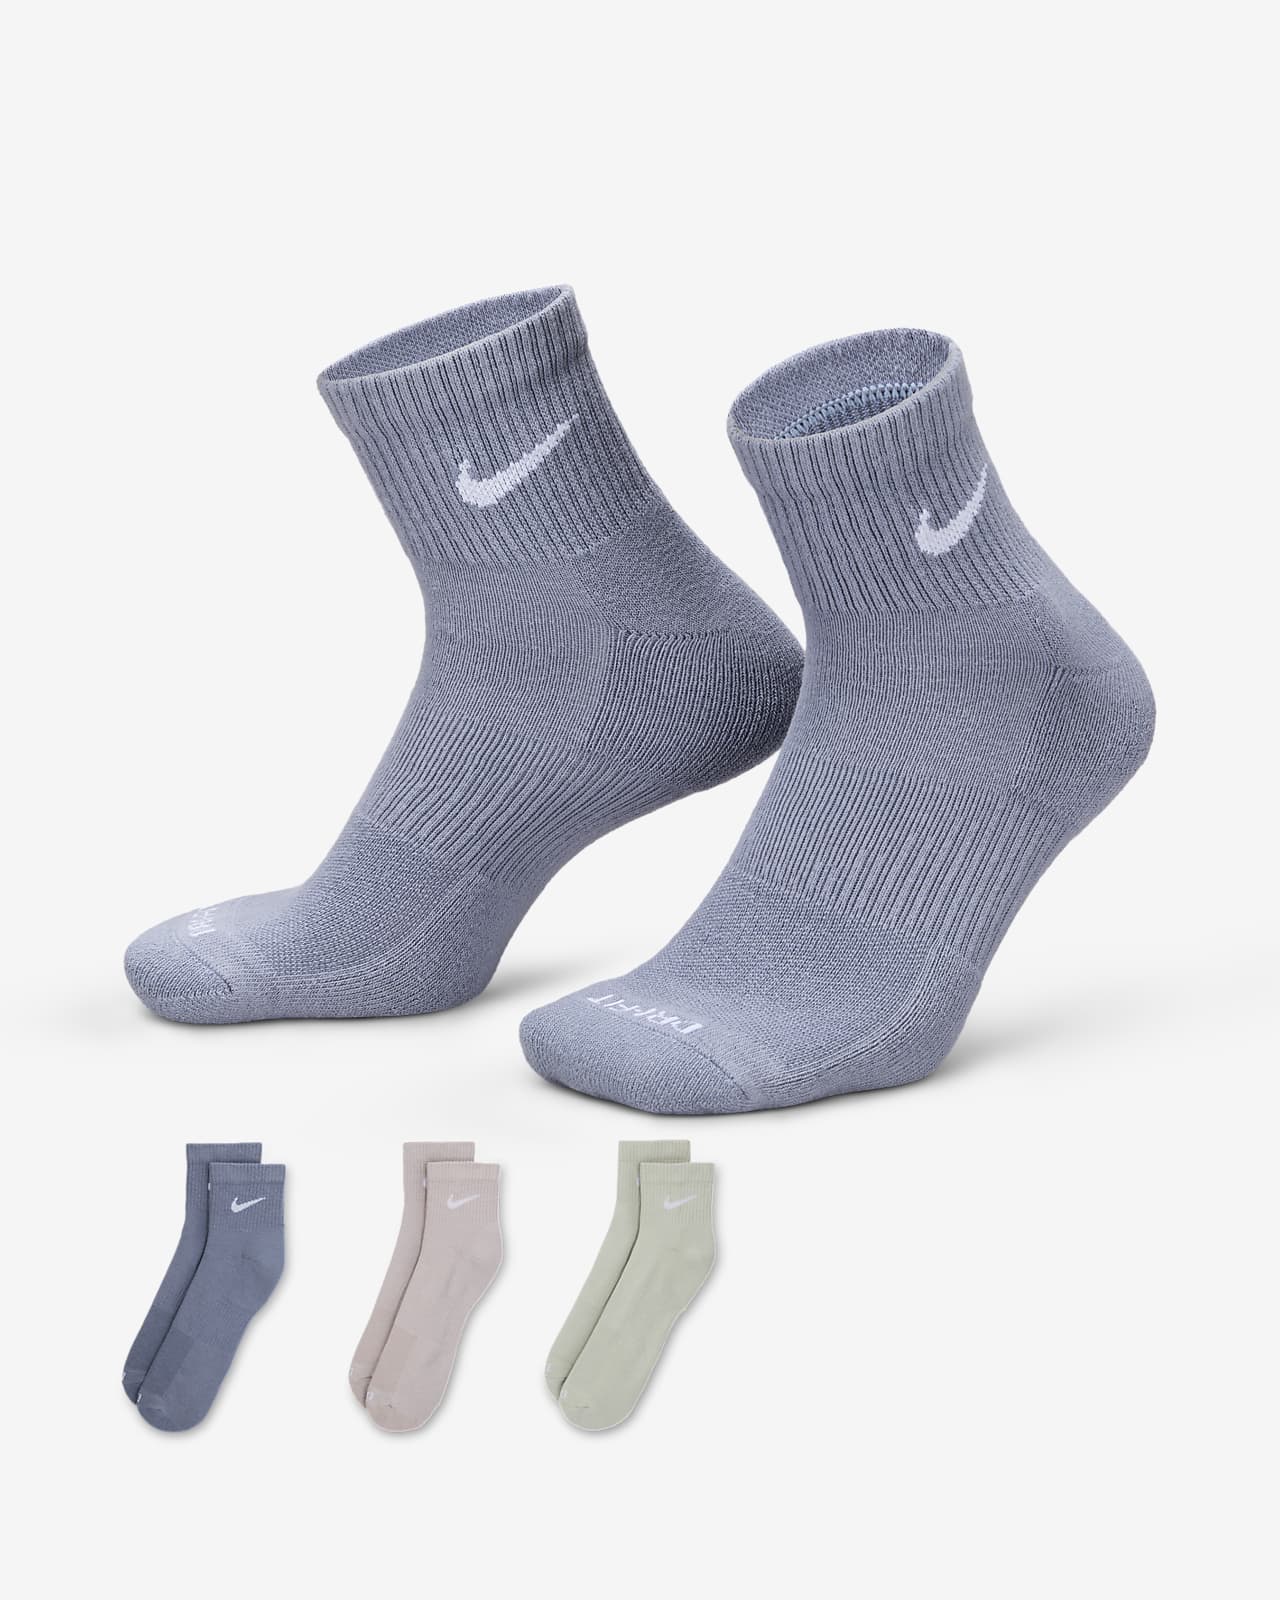 ถุงเท้าเทรนนิ่งหุ้มข้อ Nike Everyday Plus Cushioned (3 คู่)